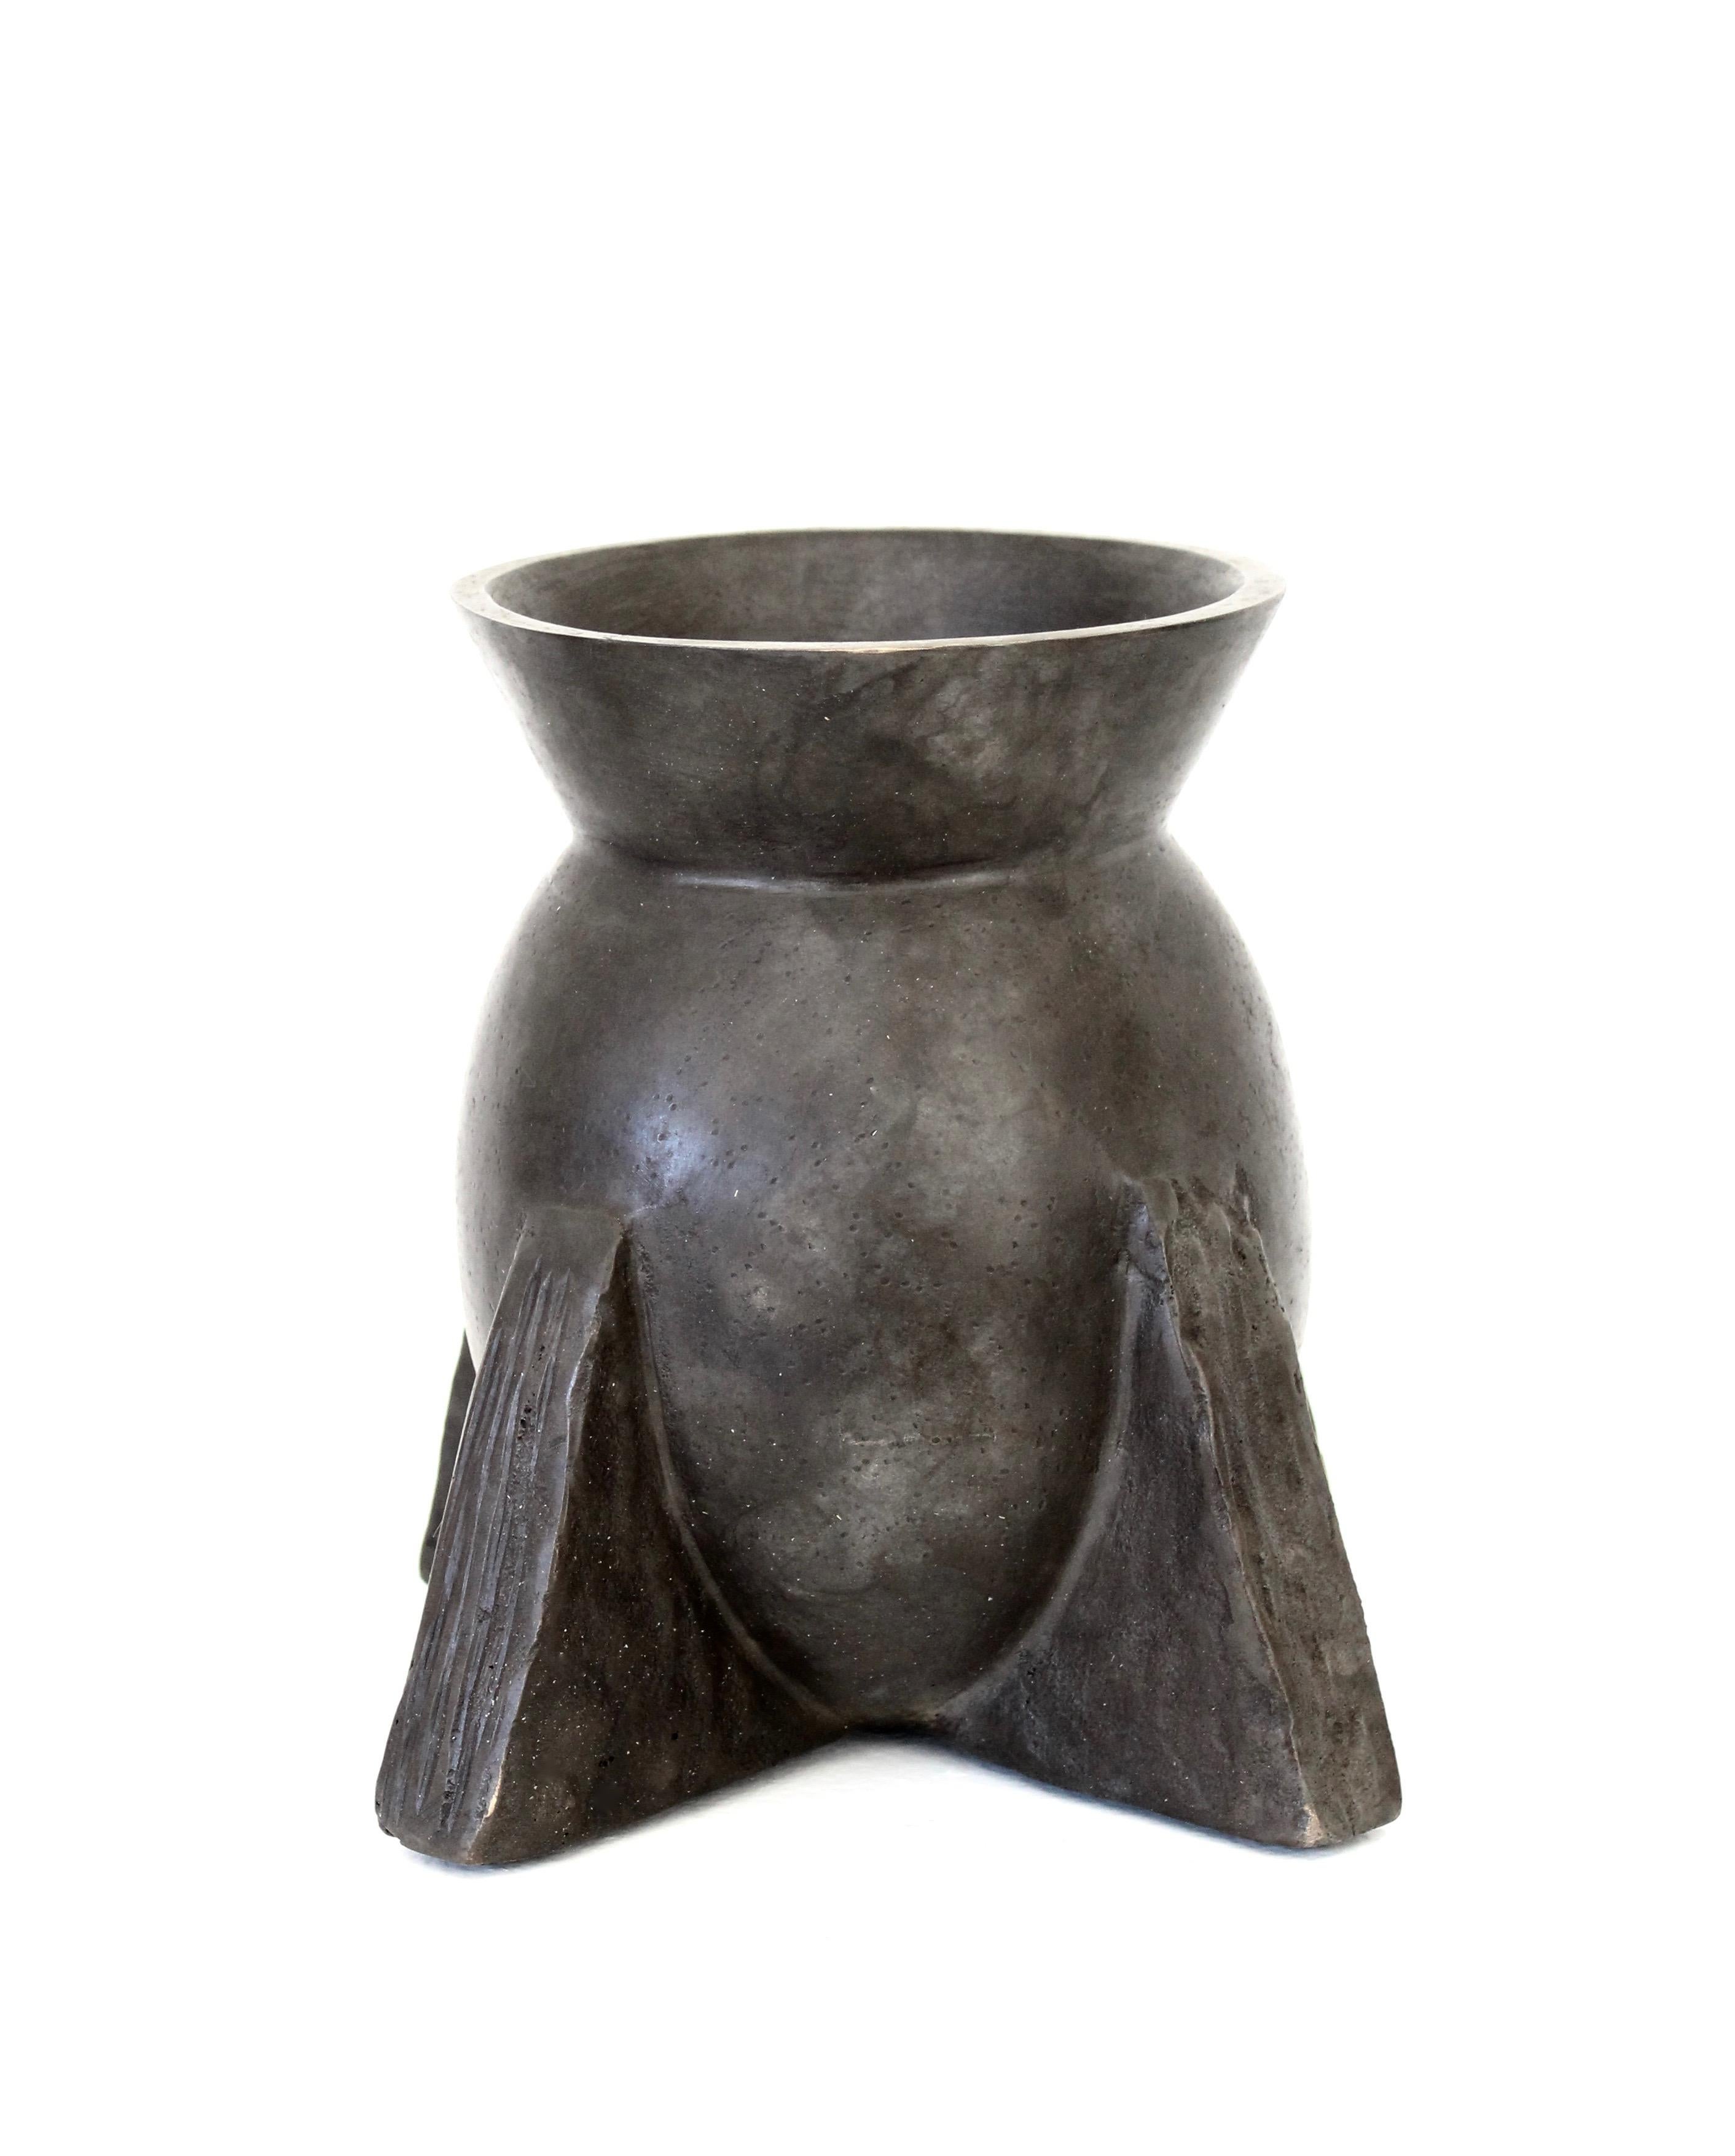 L'iconique vase Evase en bronze de la collection Rick Owens bronze relic. 
Elle est présentée dans la patine nitrate. 
Chaque bronze est fabriqué à la main en France et est signé. 
Peut être utilisé comme vase ou objet sculptural. Peut contenir